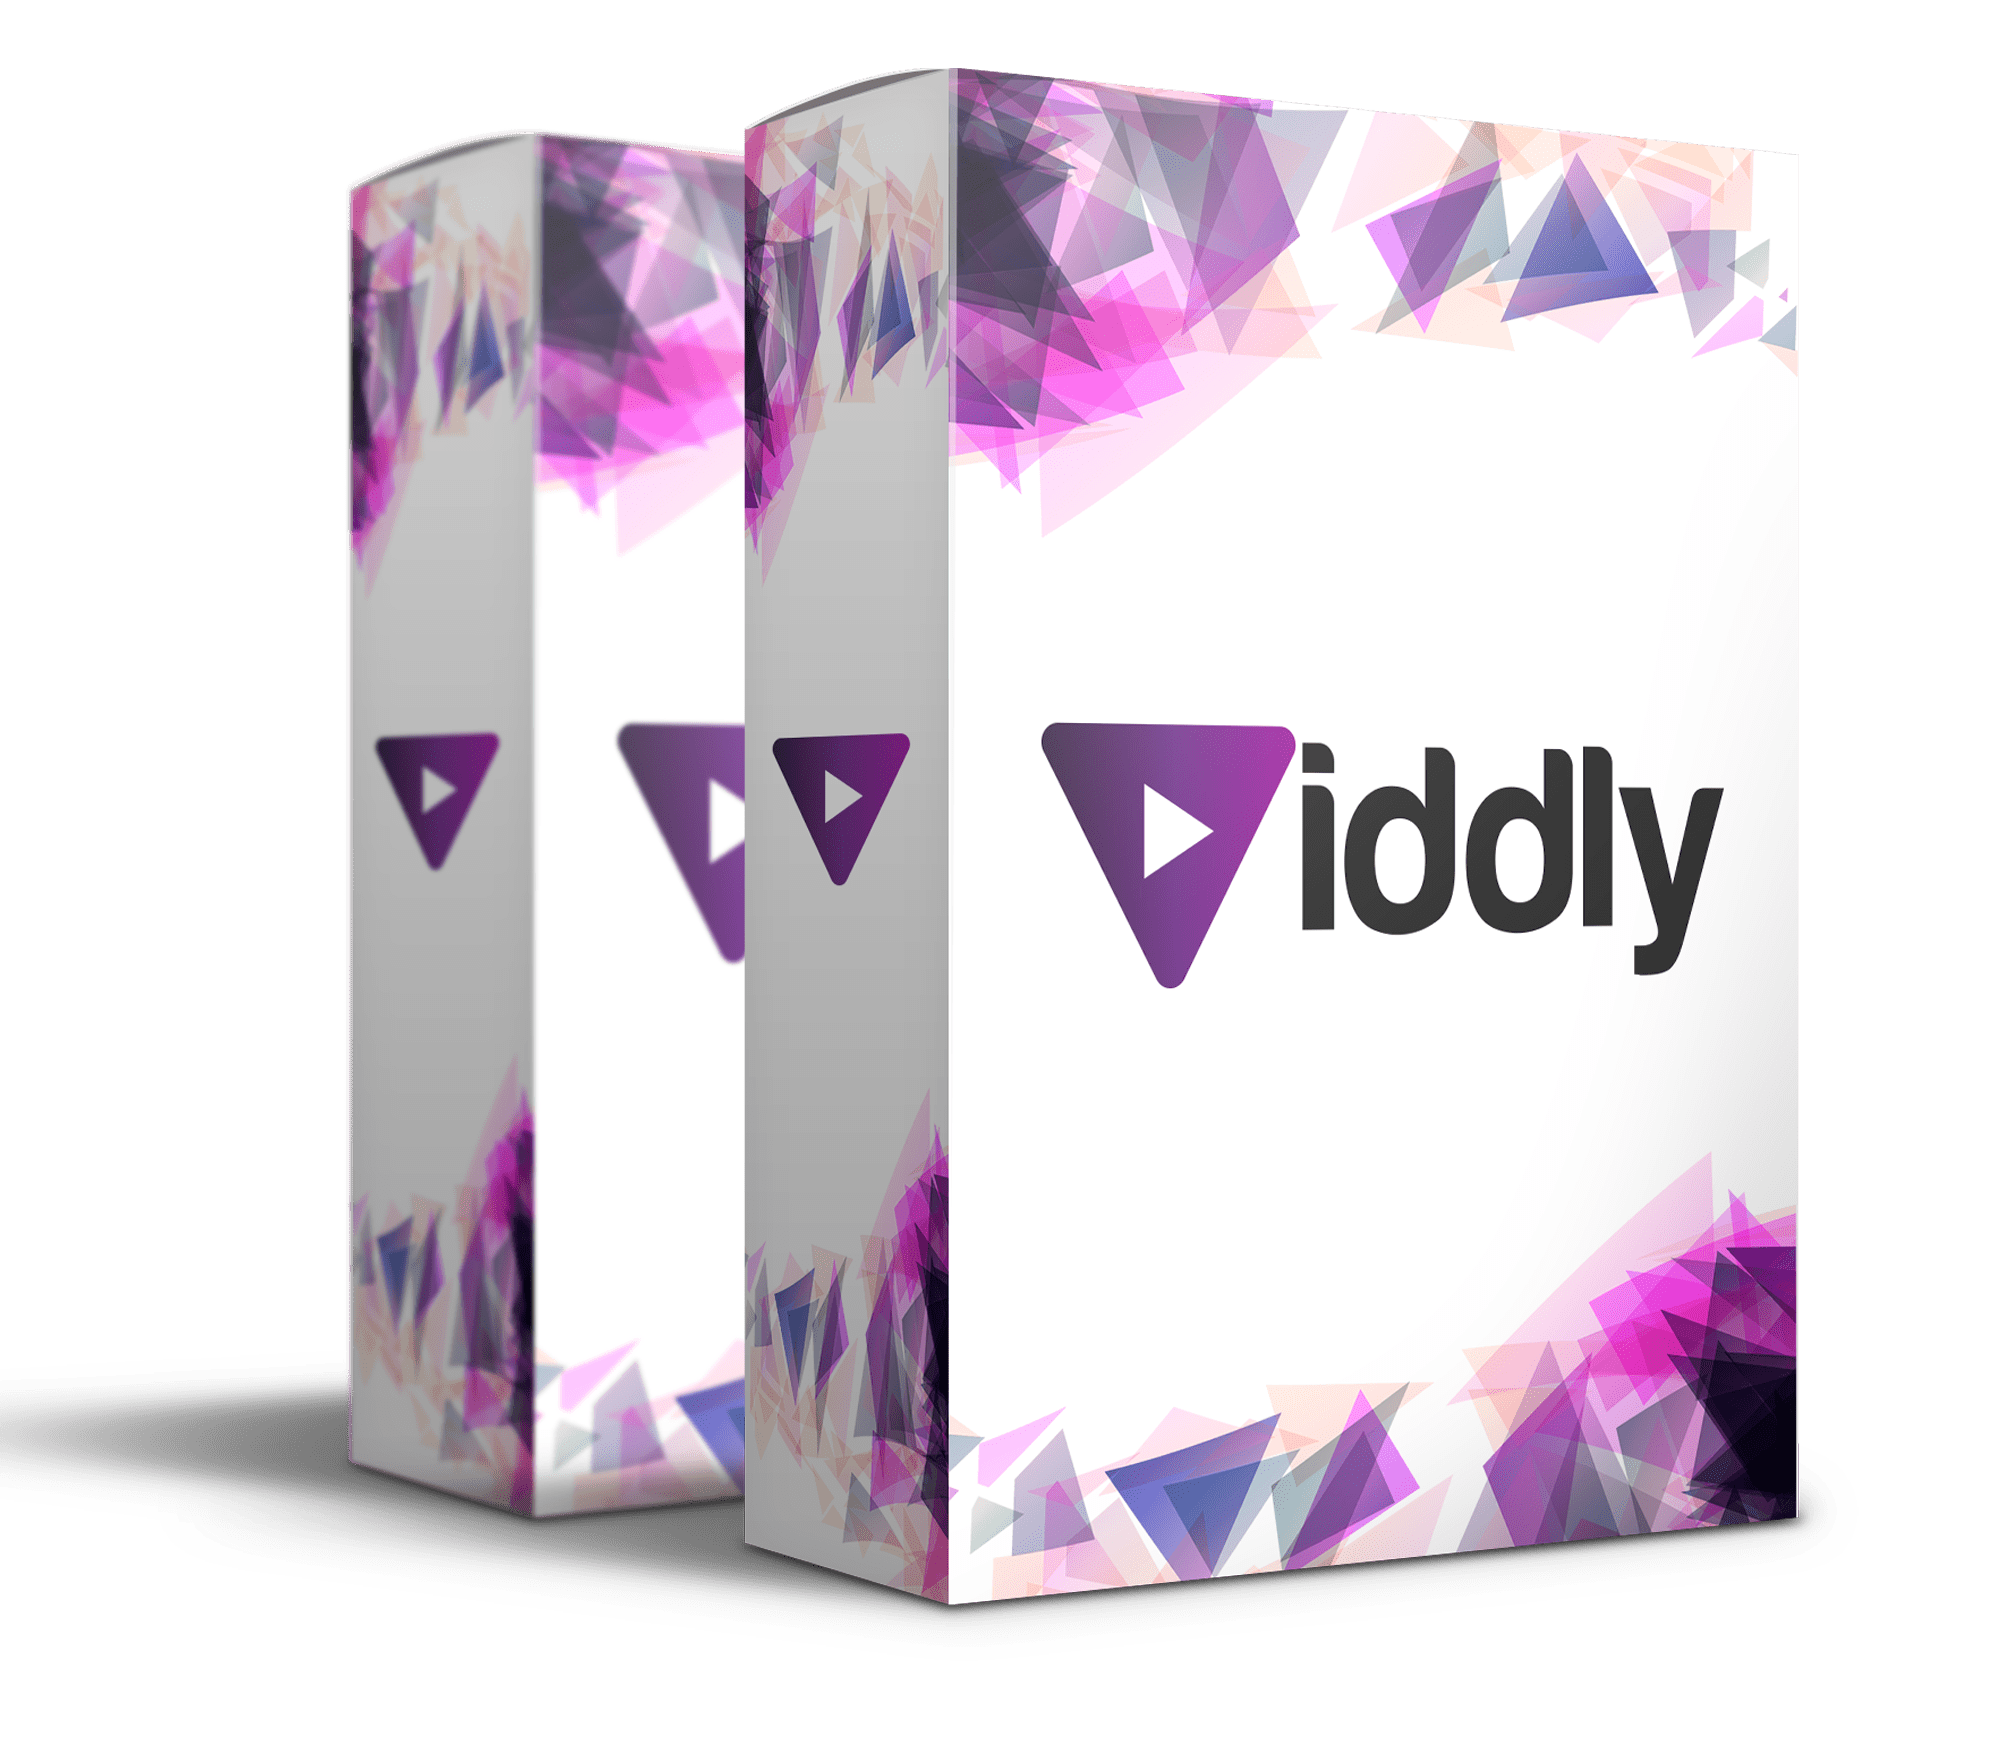 [GET] Viddly + OTOS Download